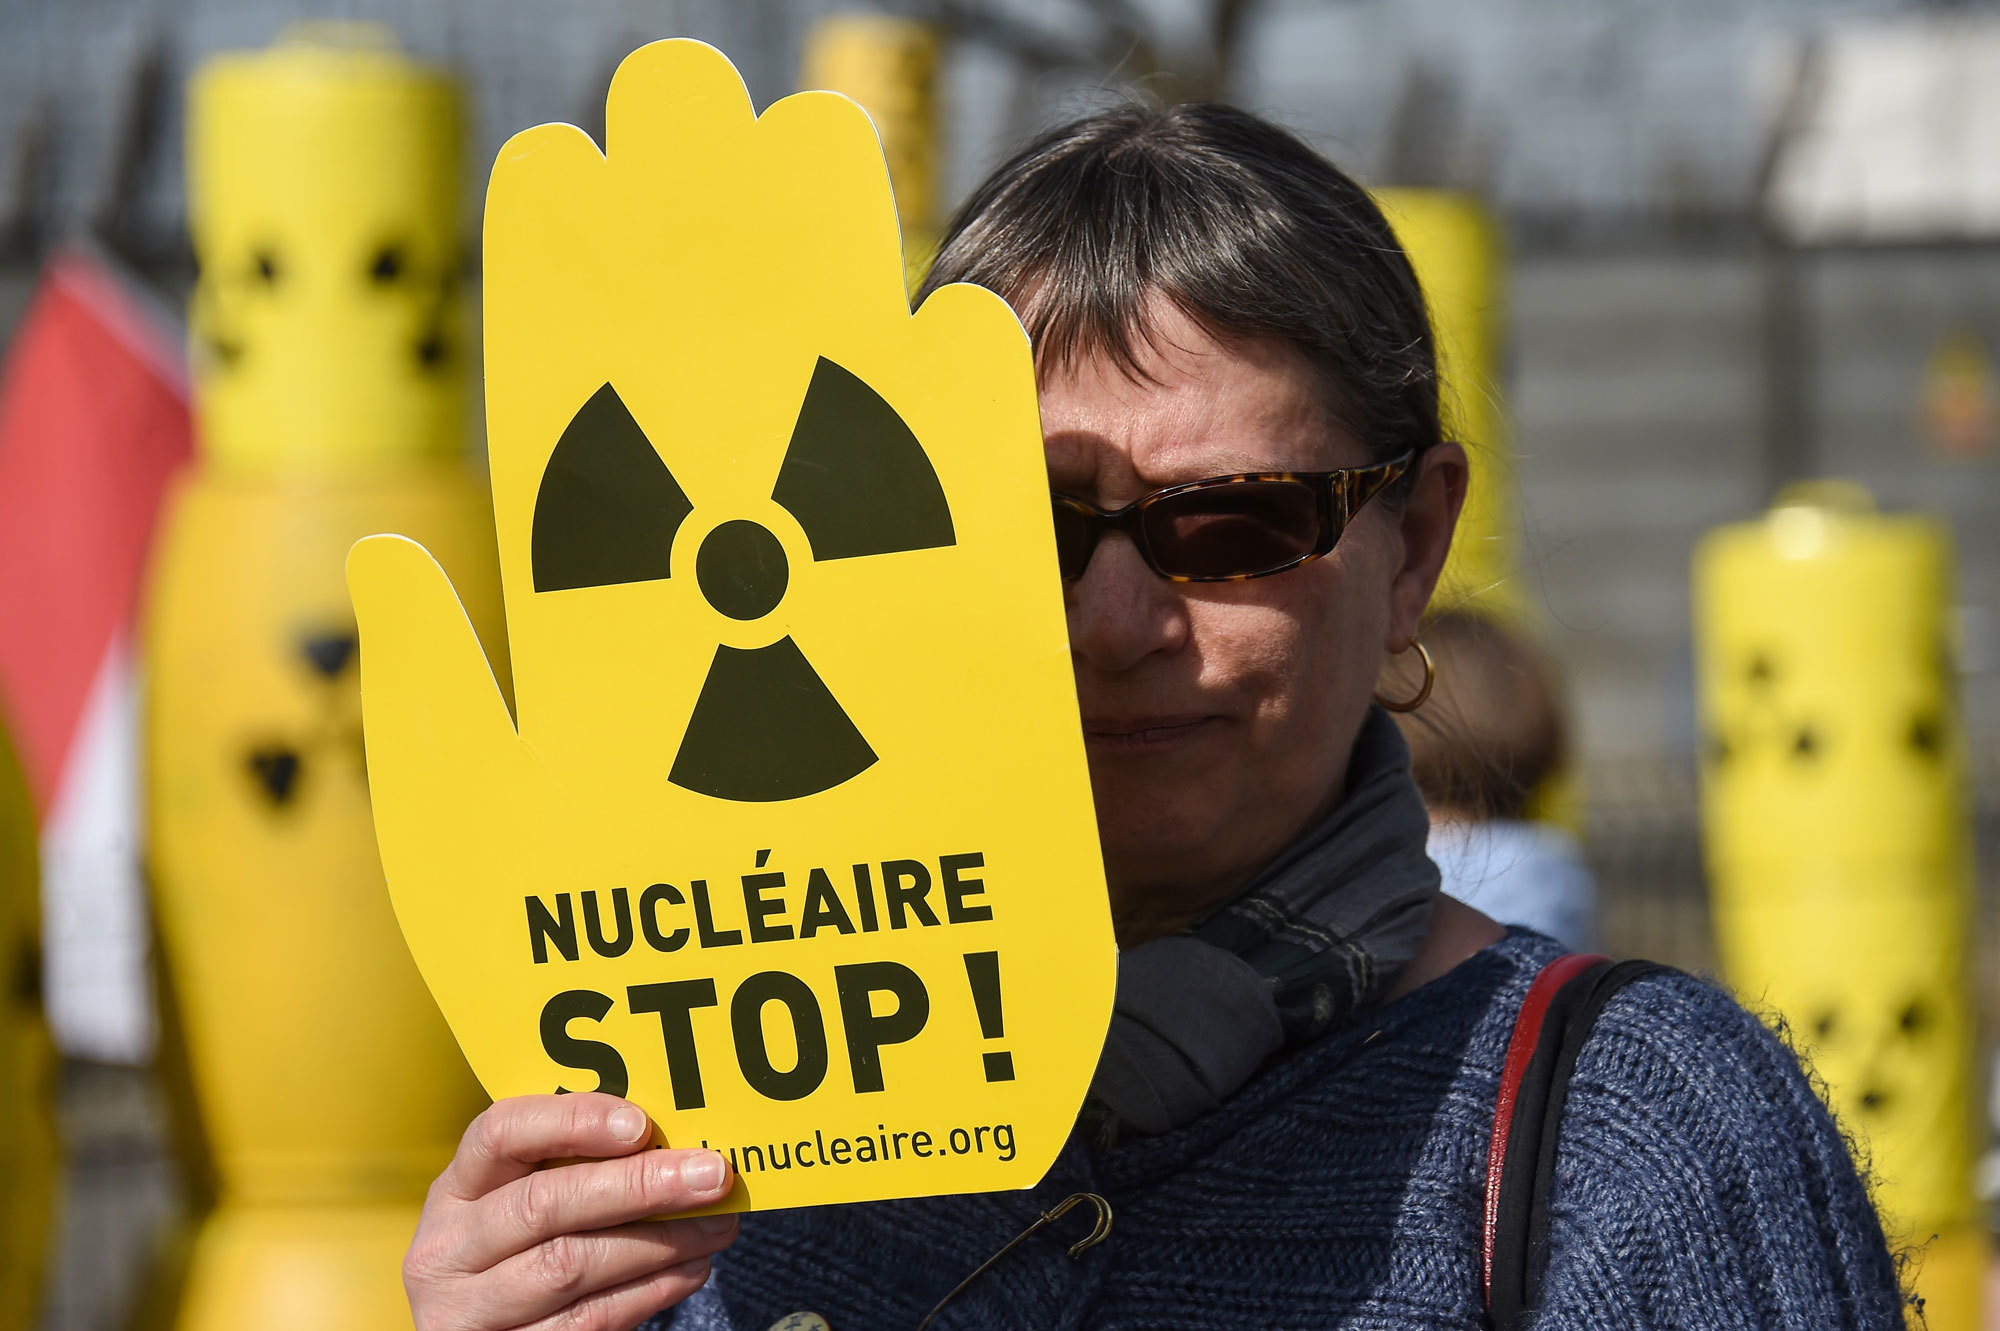 Активист в марте 2017 года, требующий закрытия АЭС Фессенхайм во Франции. Власти объявили в апреле, что закроют объект к 2020 году.